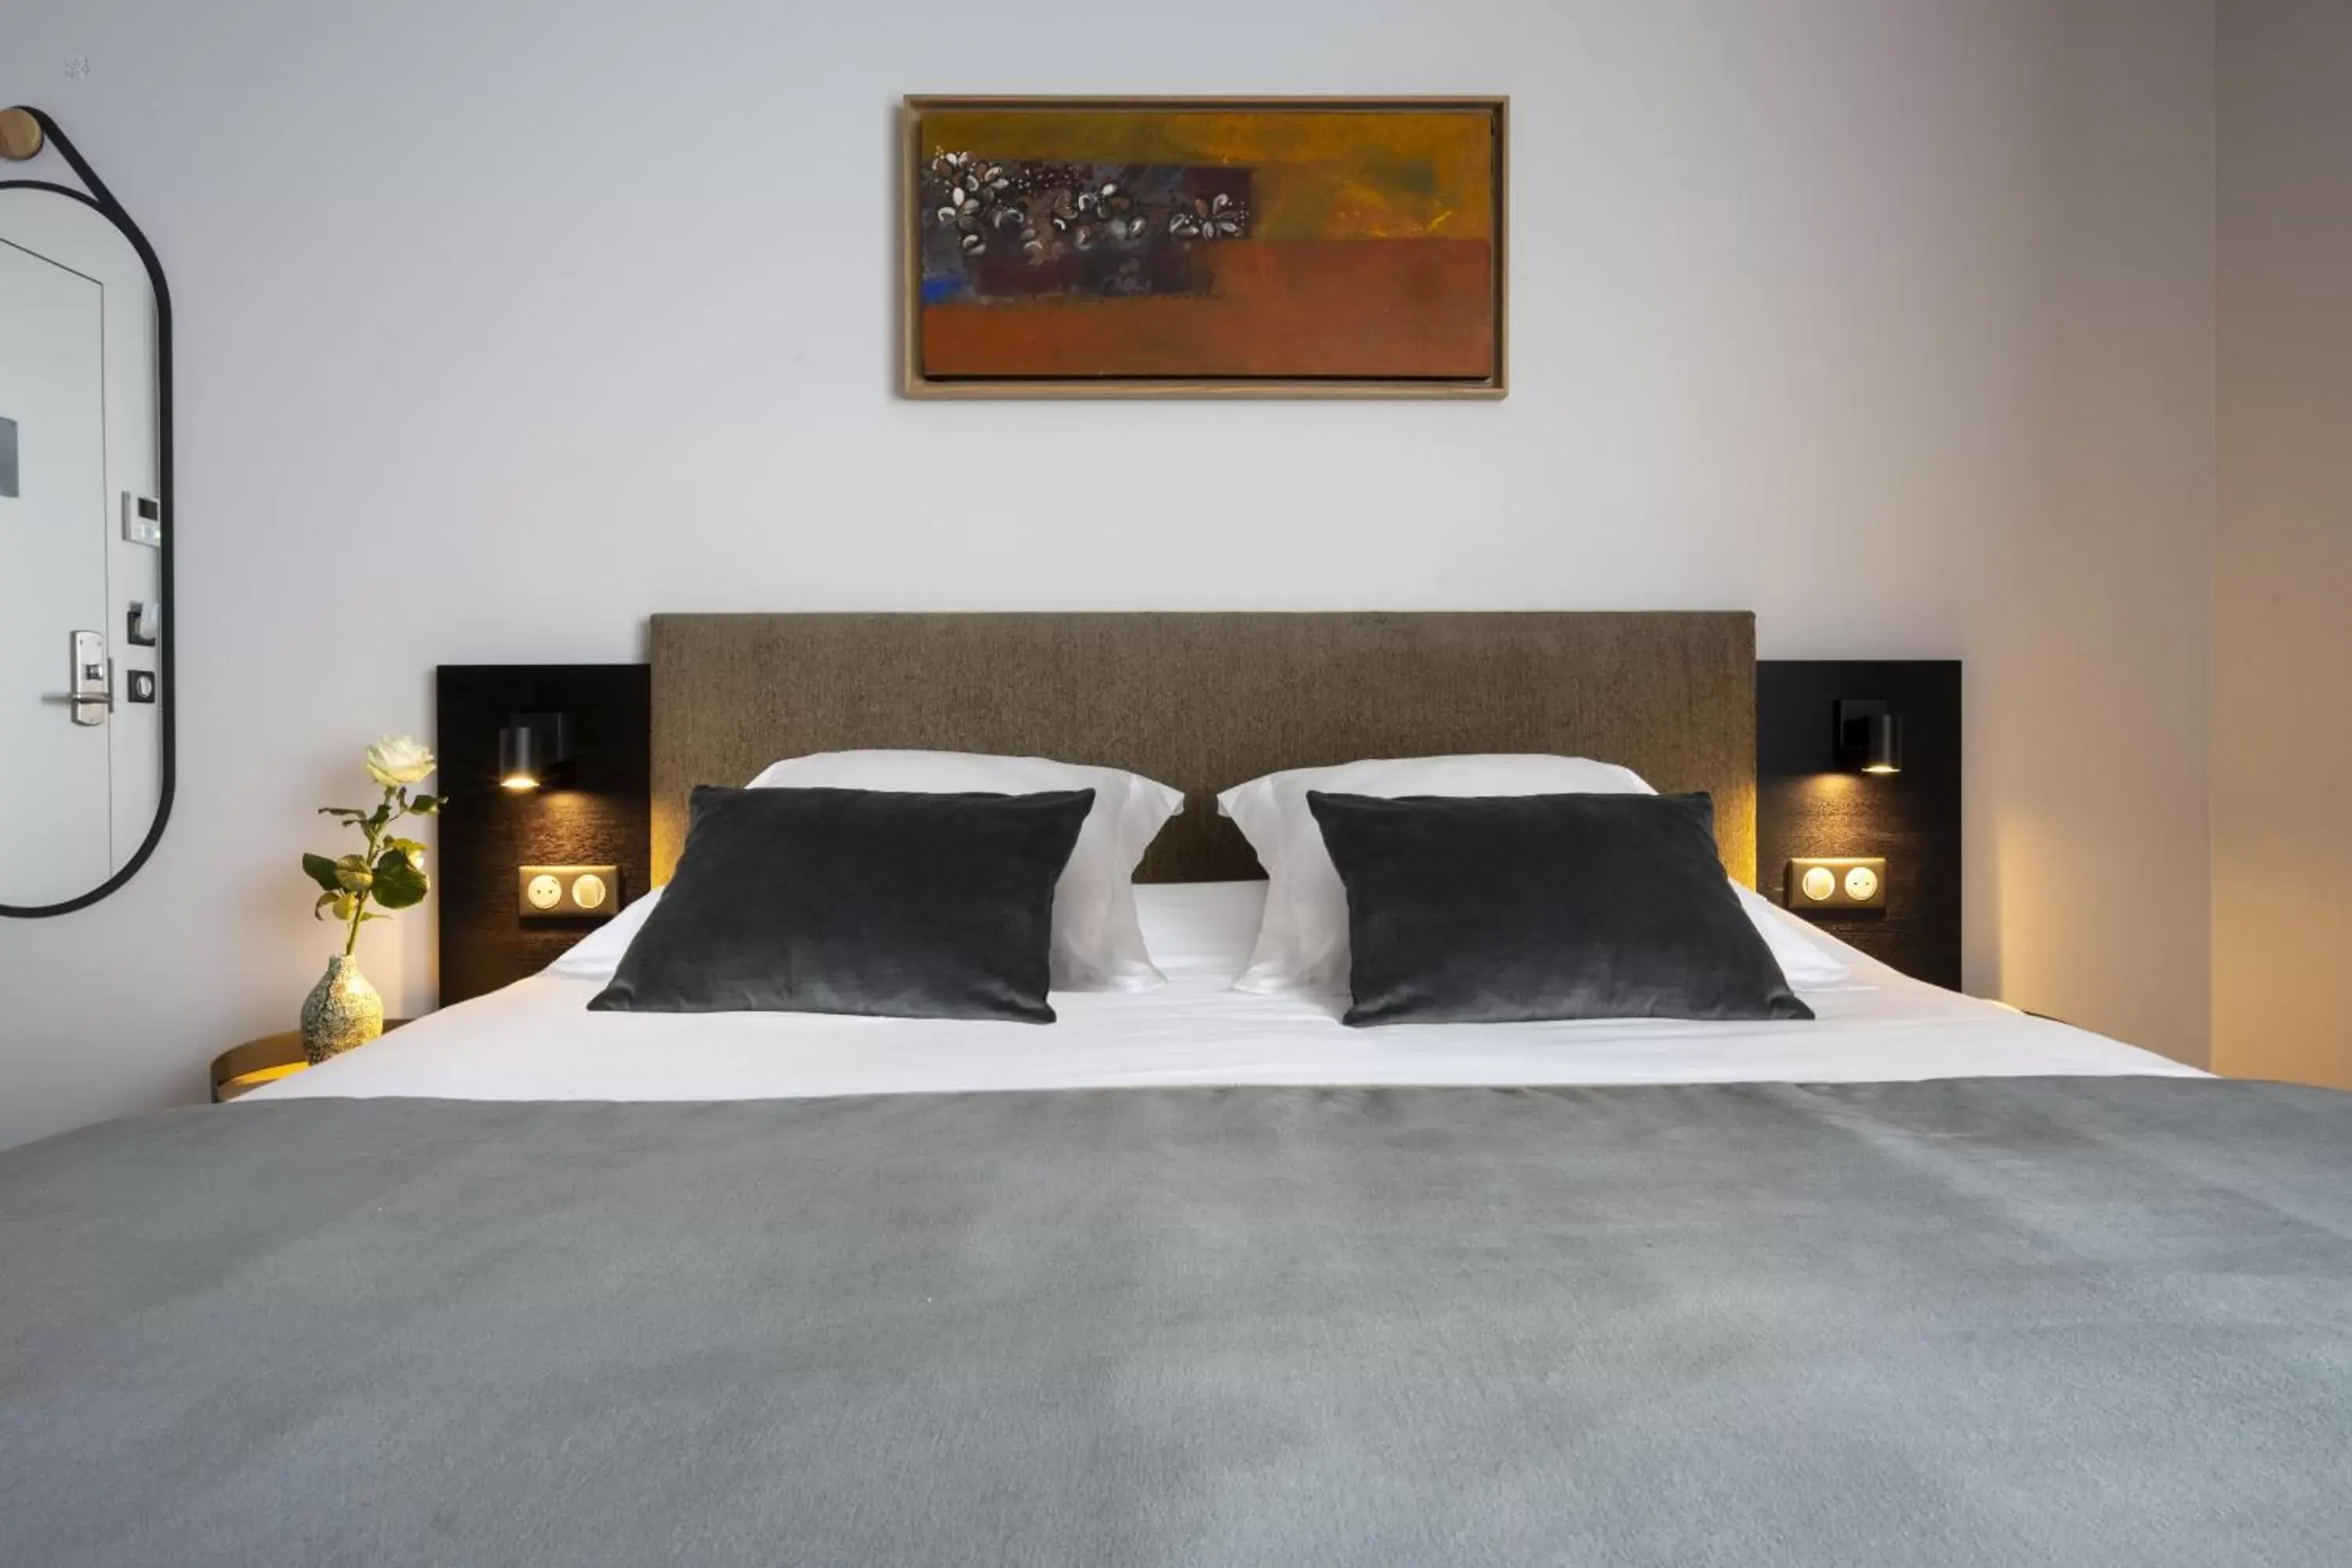 Bedroom, Bed in Best Western Premier Masqhotel